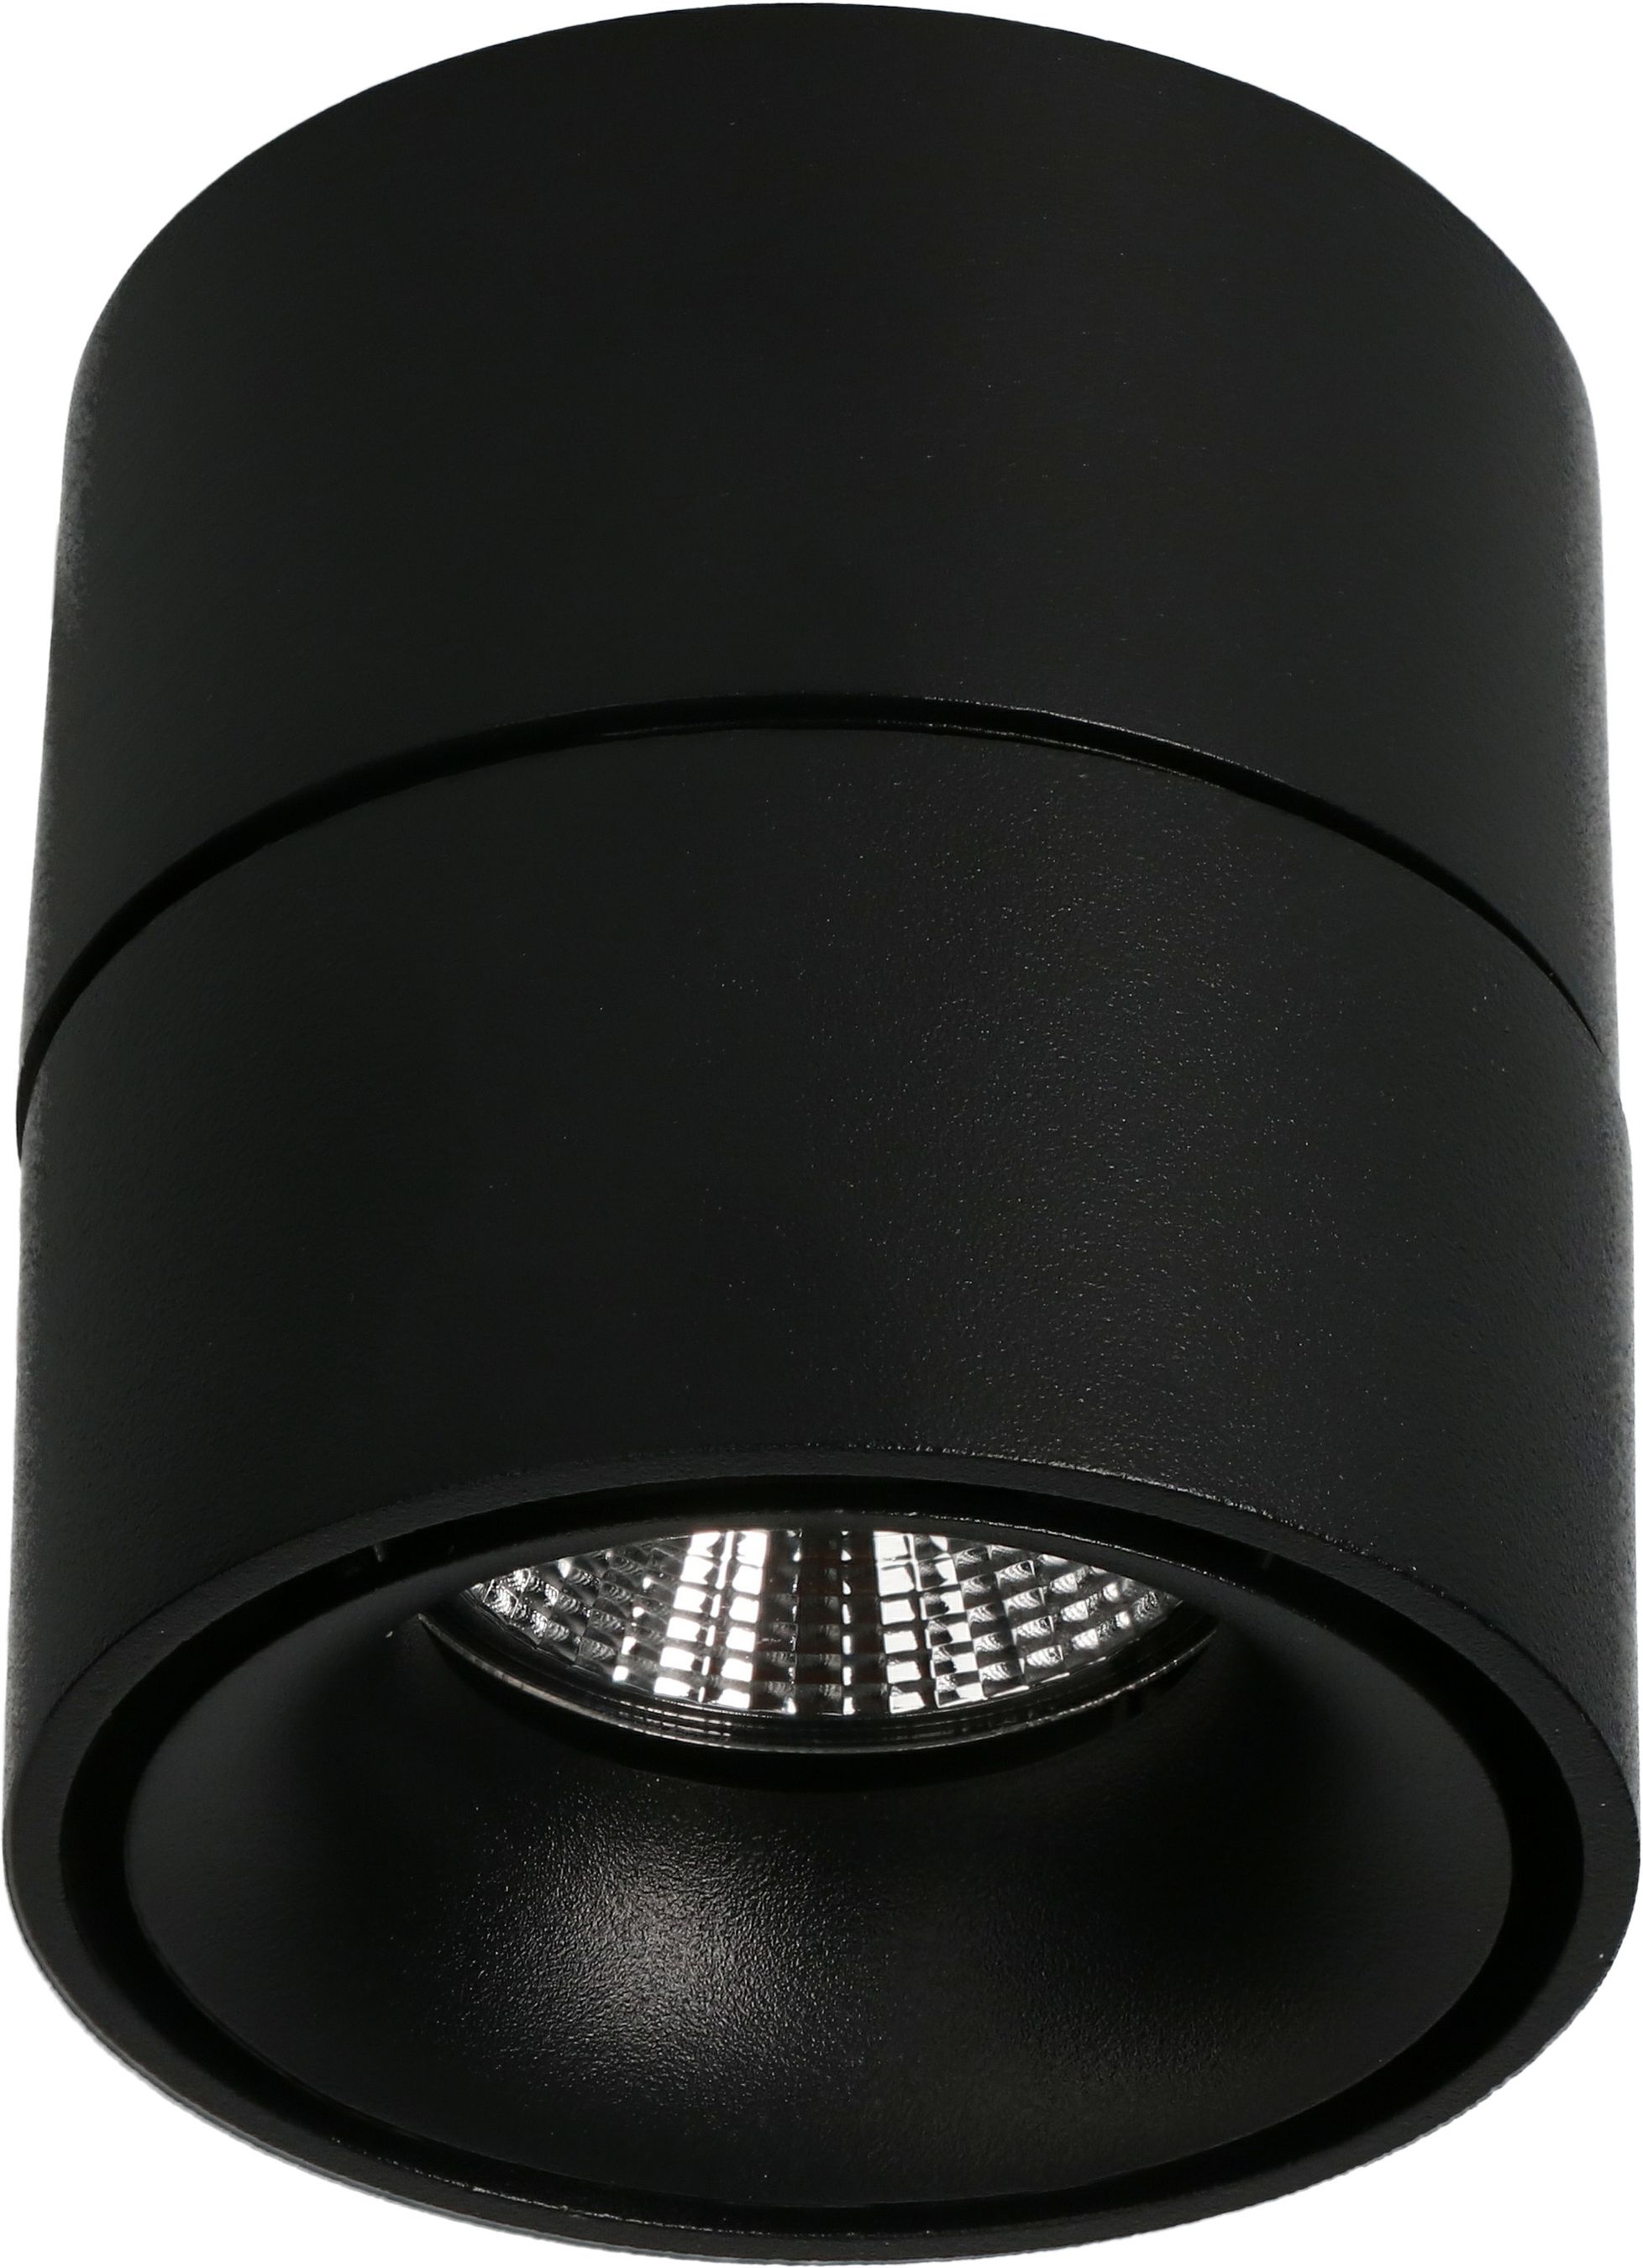 LED-Ceiling Spot "SHINE" matt black